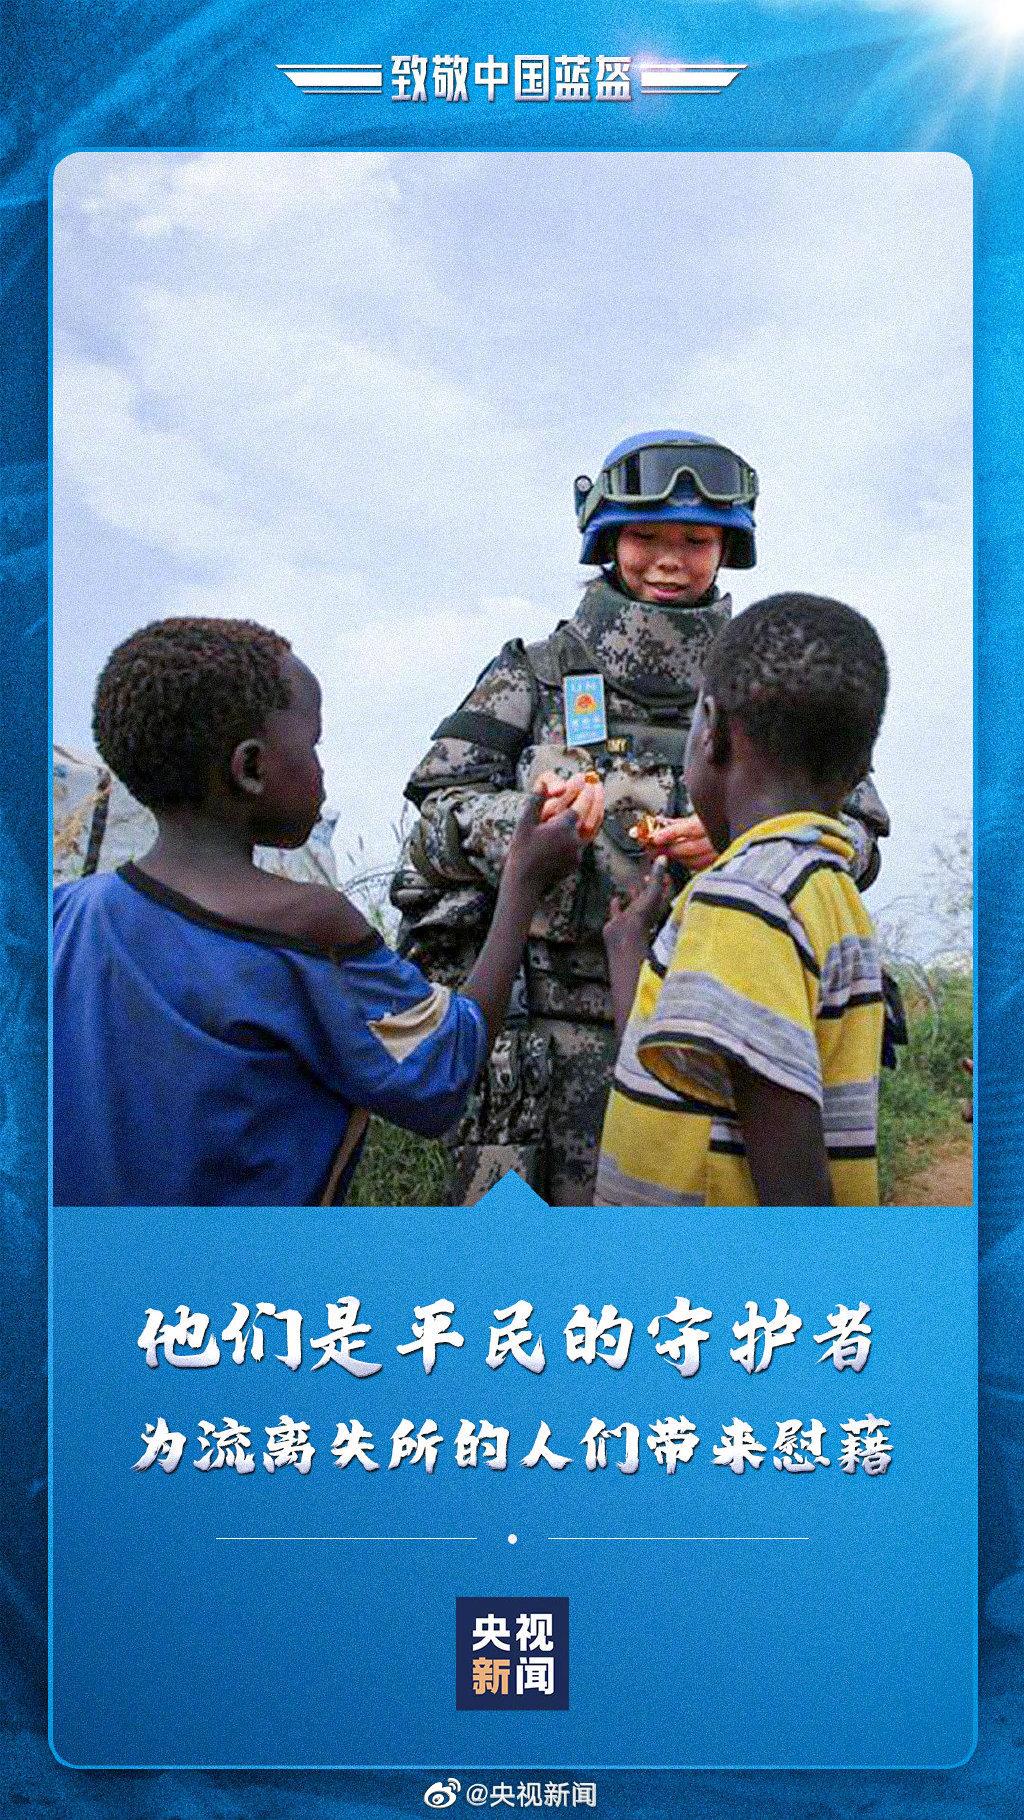 致敬愿中国蓝盔每次启程都能平安归来